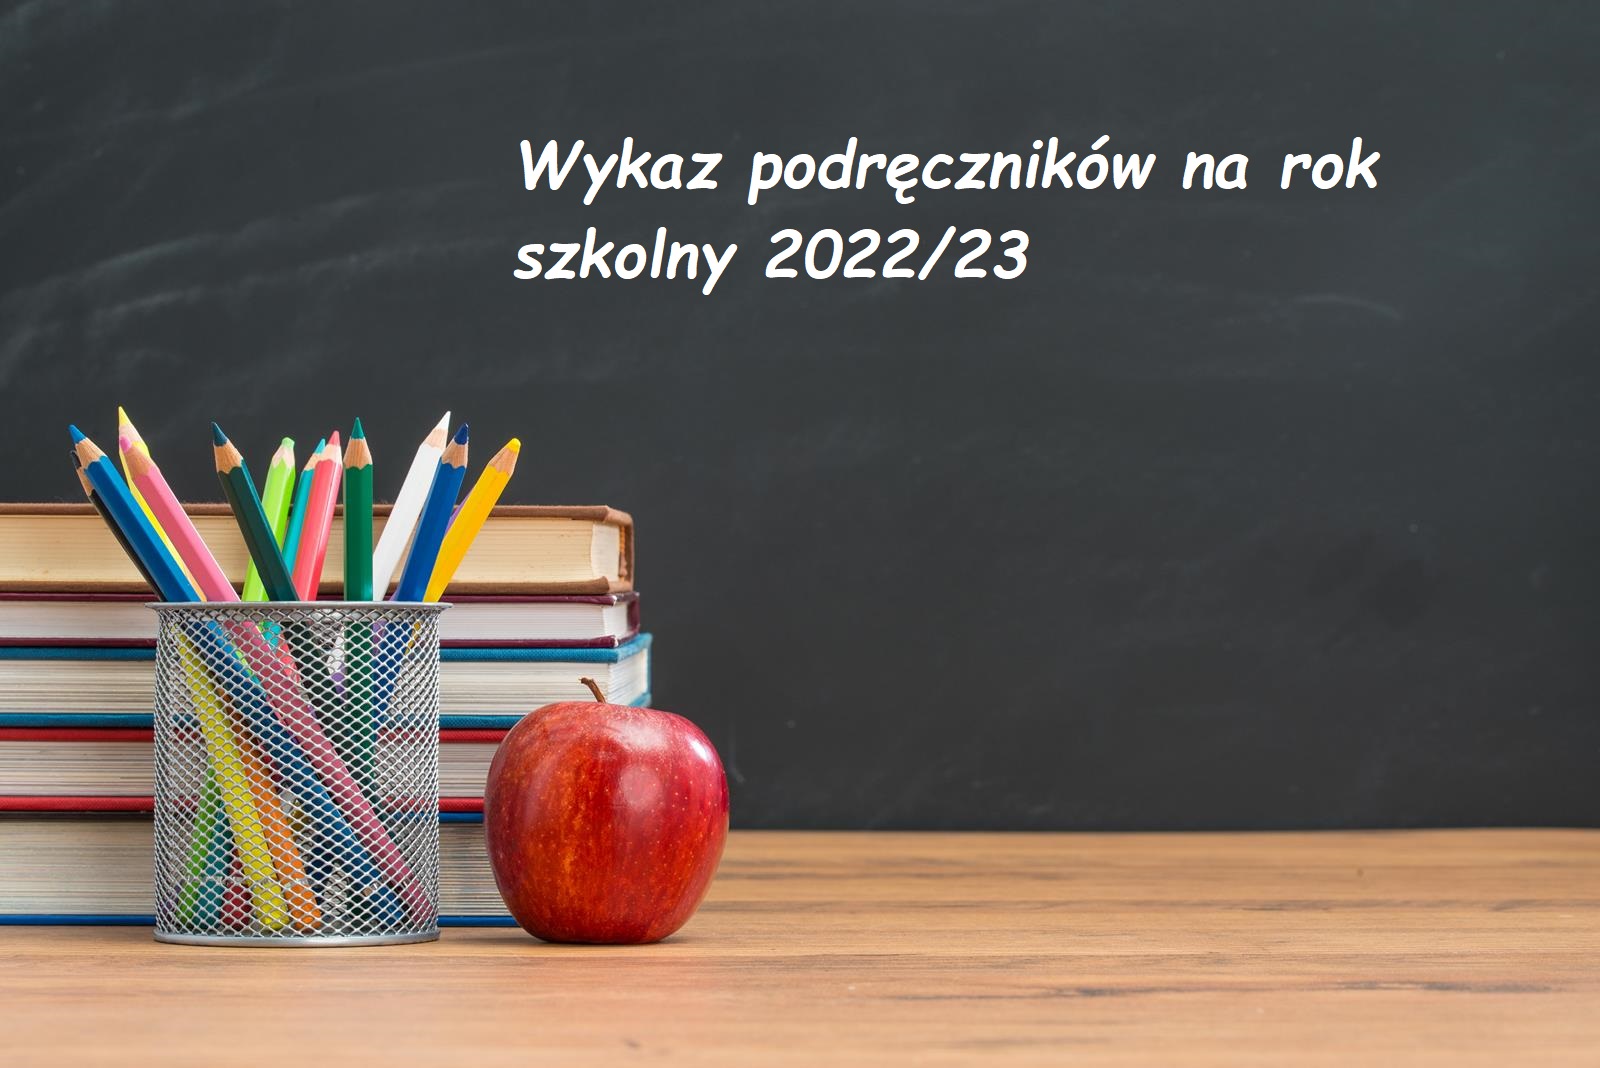 Wykaz podręczników na rok szkolny 2022/23